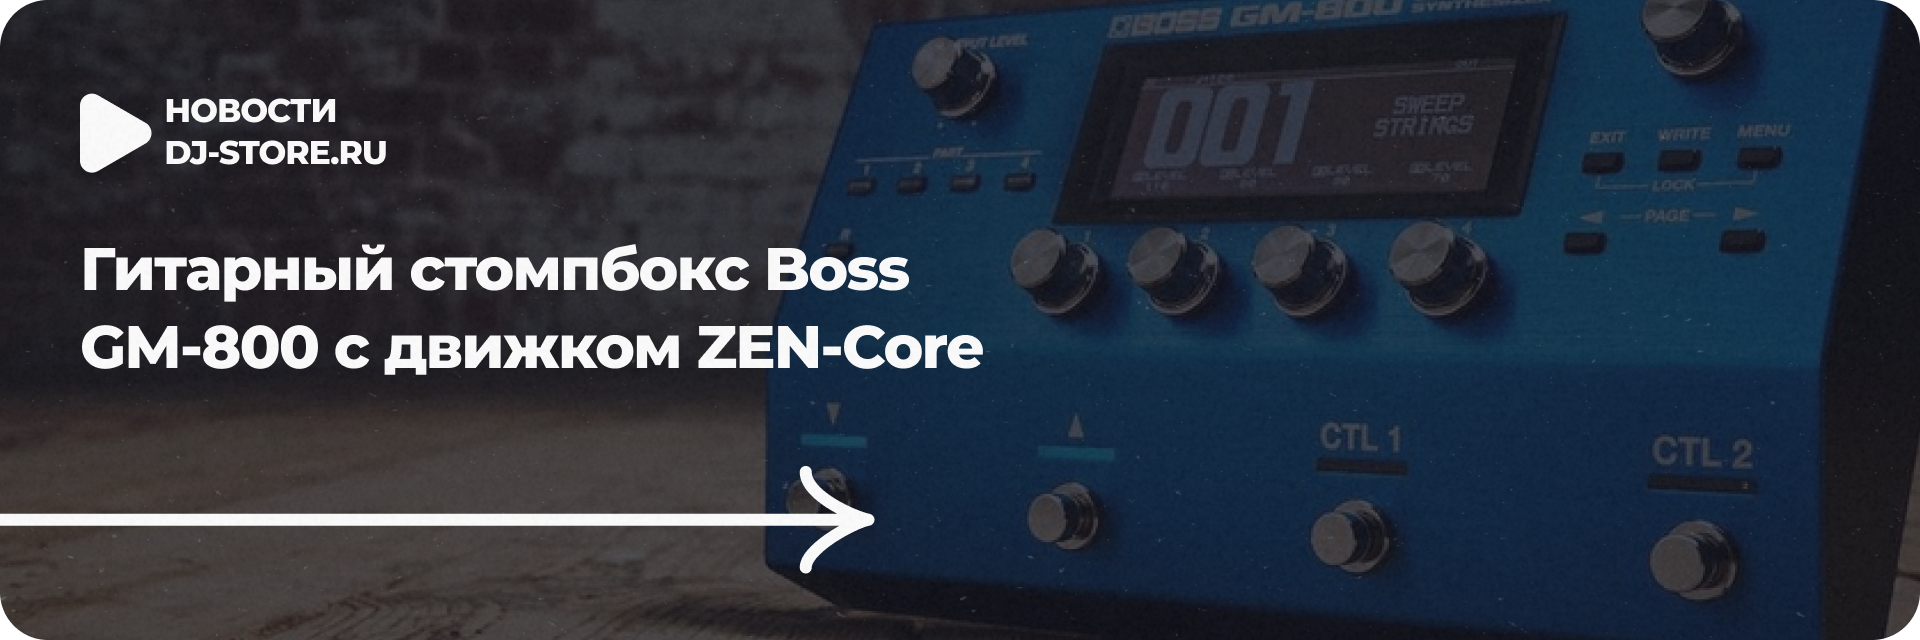 Гитарный стомпбокс Boss GM-800 с движком ZEN-Core